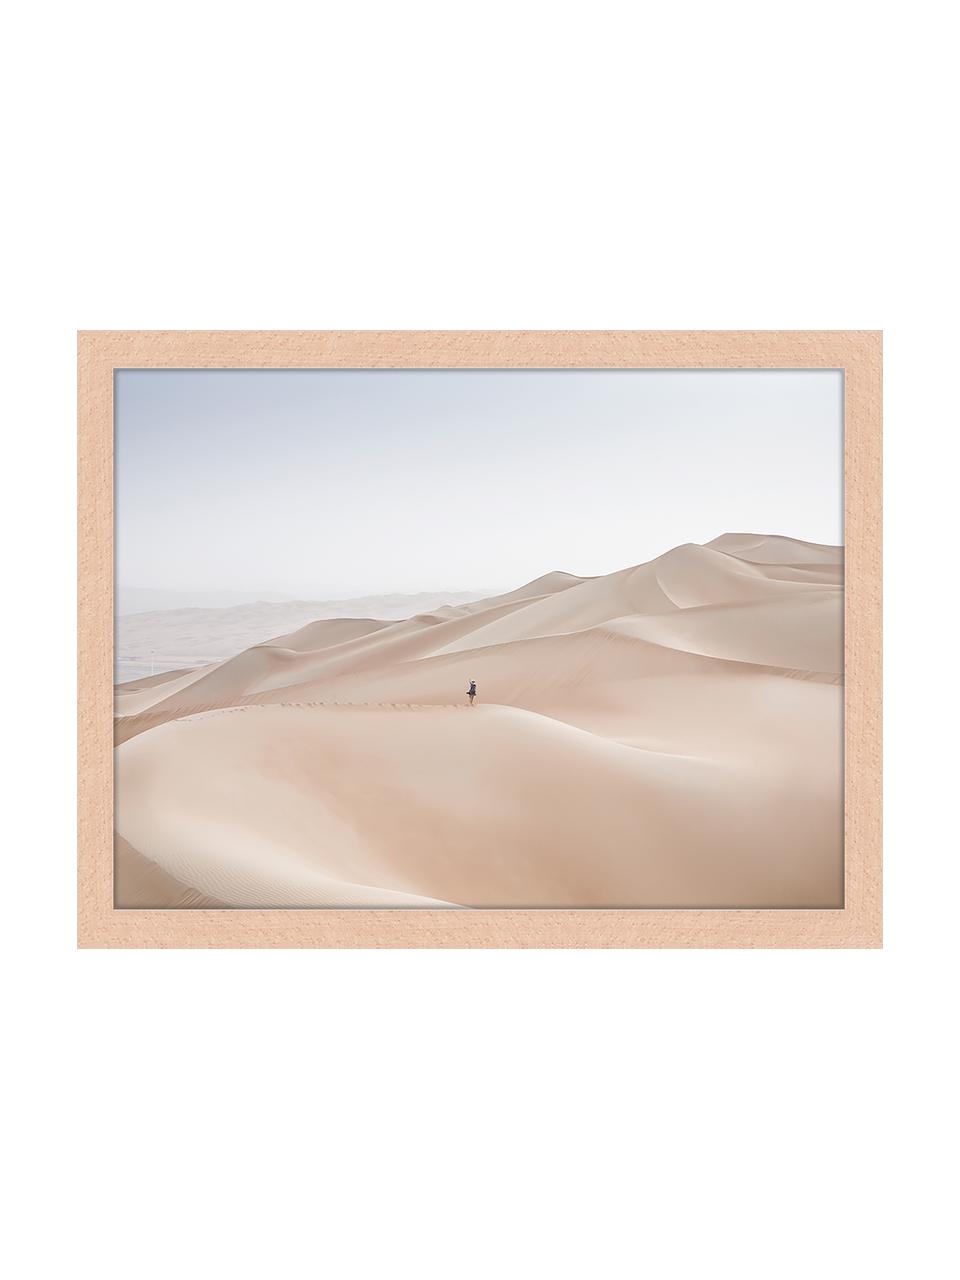 Gerahmter Digitaldruck Khali Desert, Bild: Digitaldruck auf Papier, , Rahmen: Holz, lackiert, Front: Plexiglas, Mehrfarbig, 43 x 33 cm